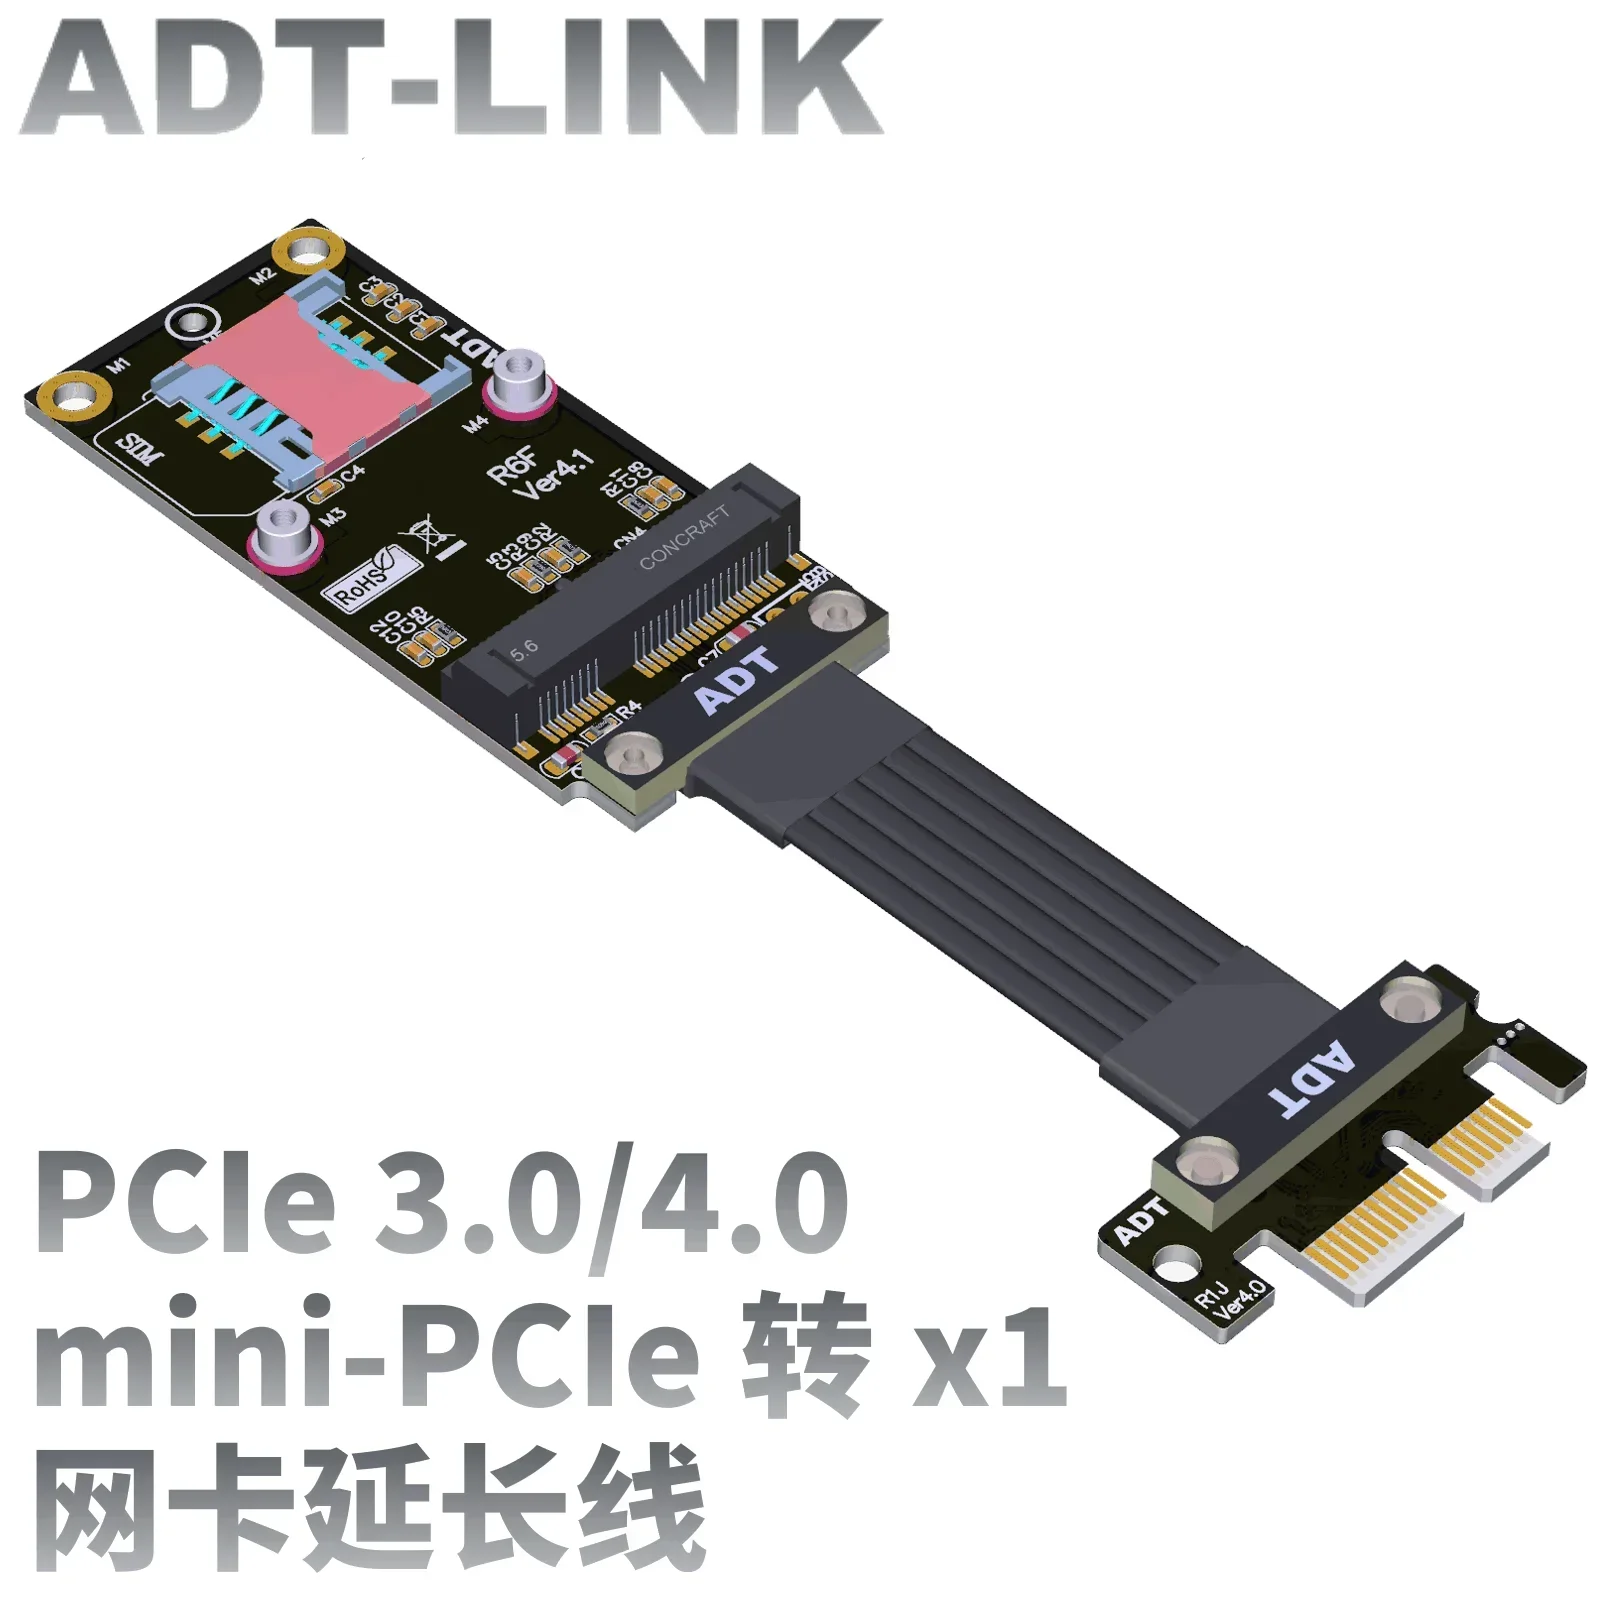 

ADT новый PCI Express 4,0x1 на Mini PCIe (Minicard) удлинительный кабель сигнала mPCIe Minipcie PCIE 4,0 1x адаптер сетевой переходной карты